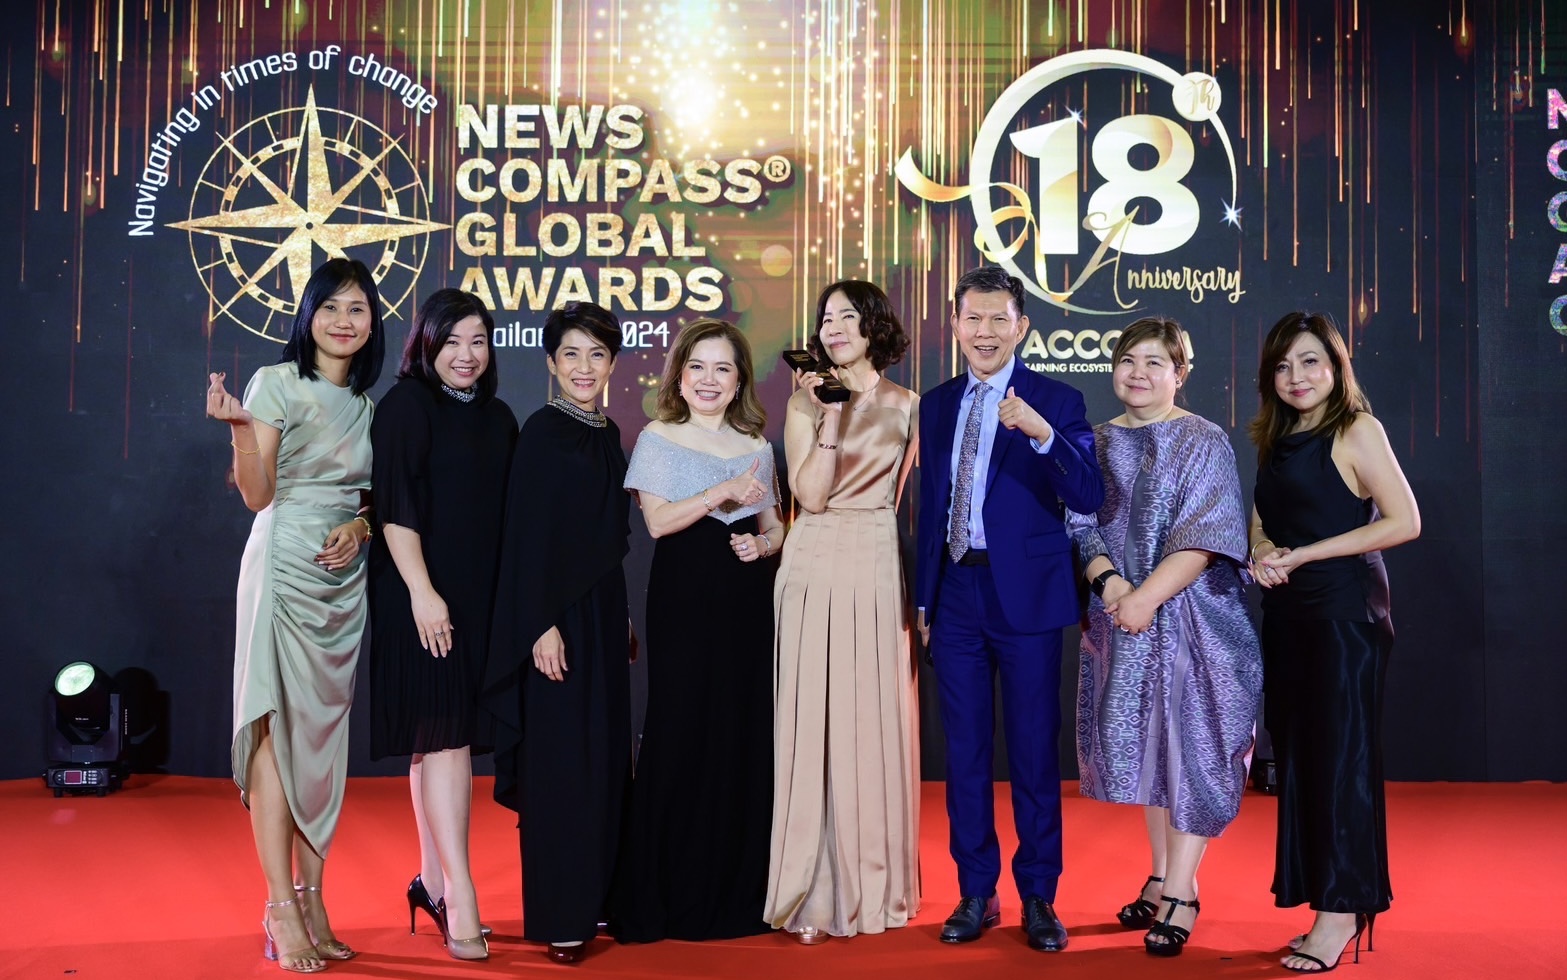 เคทีซีรับรางวัล “องค์กรที่มีความโดดเด่นในการนำโค้ชและพี่เลี้ยงไปใช้อย่างมีประสิทธิผล”ครั้งแรกของประเทศไทย จากแอคคอมกรุ๊ปและ NEWS® Navigation